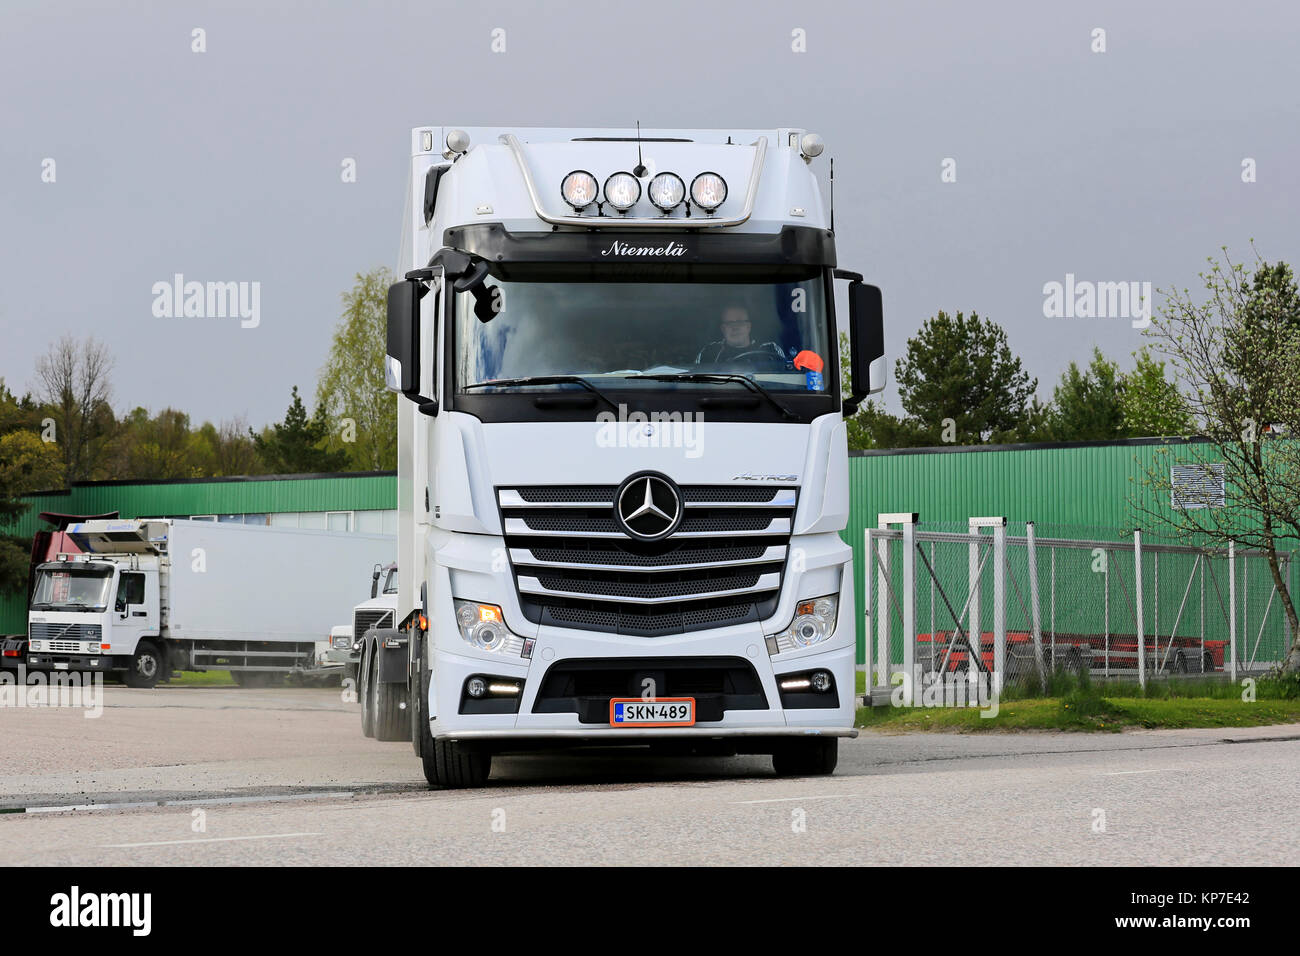 SALO, FINLANDE - 15 MAI 2015 : Nouveau Mercedes-Benz Actros camion sur une rue. Daimler rapporte que dans le Duel de carburant la consommation de carburant tests parti o Banque D'Images